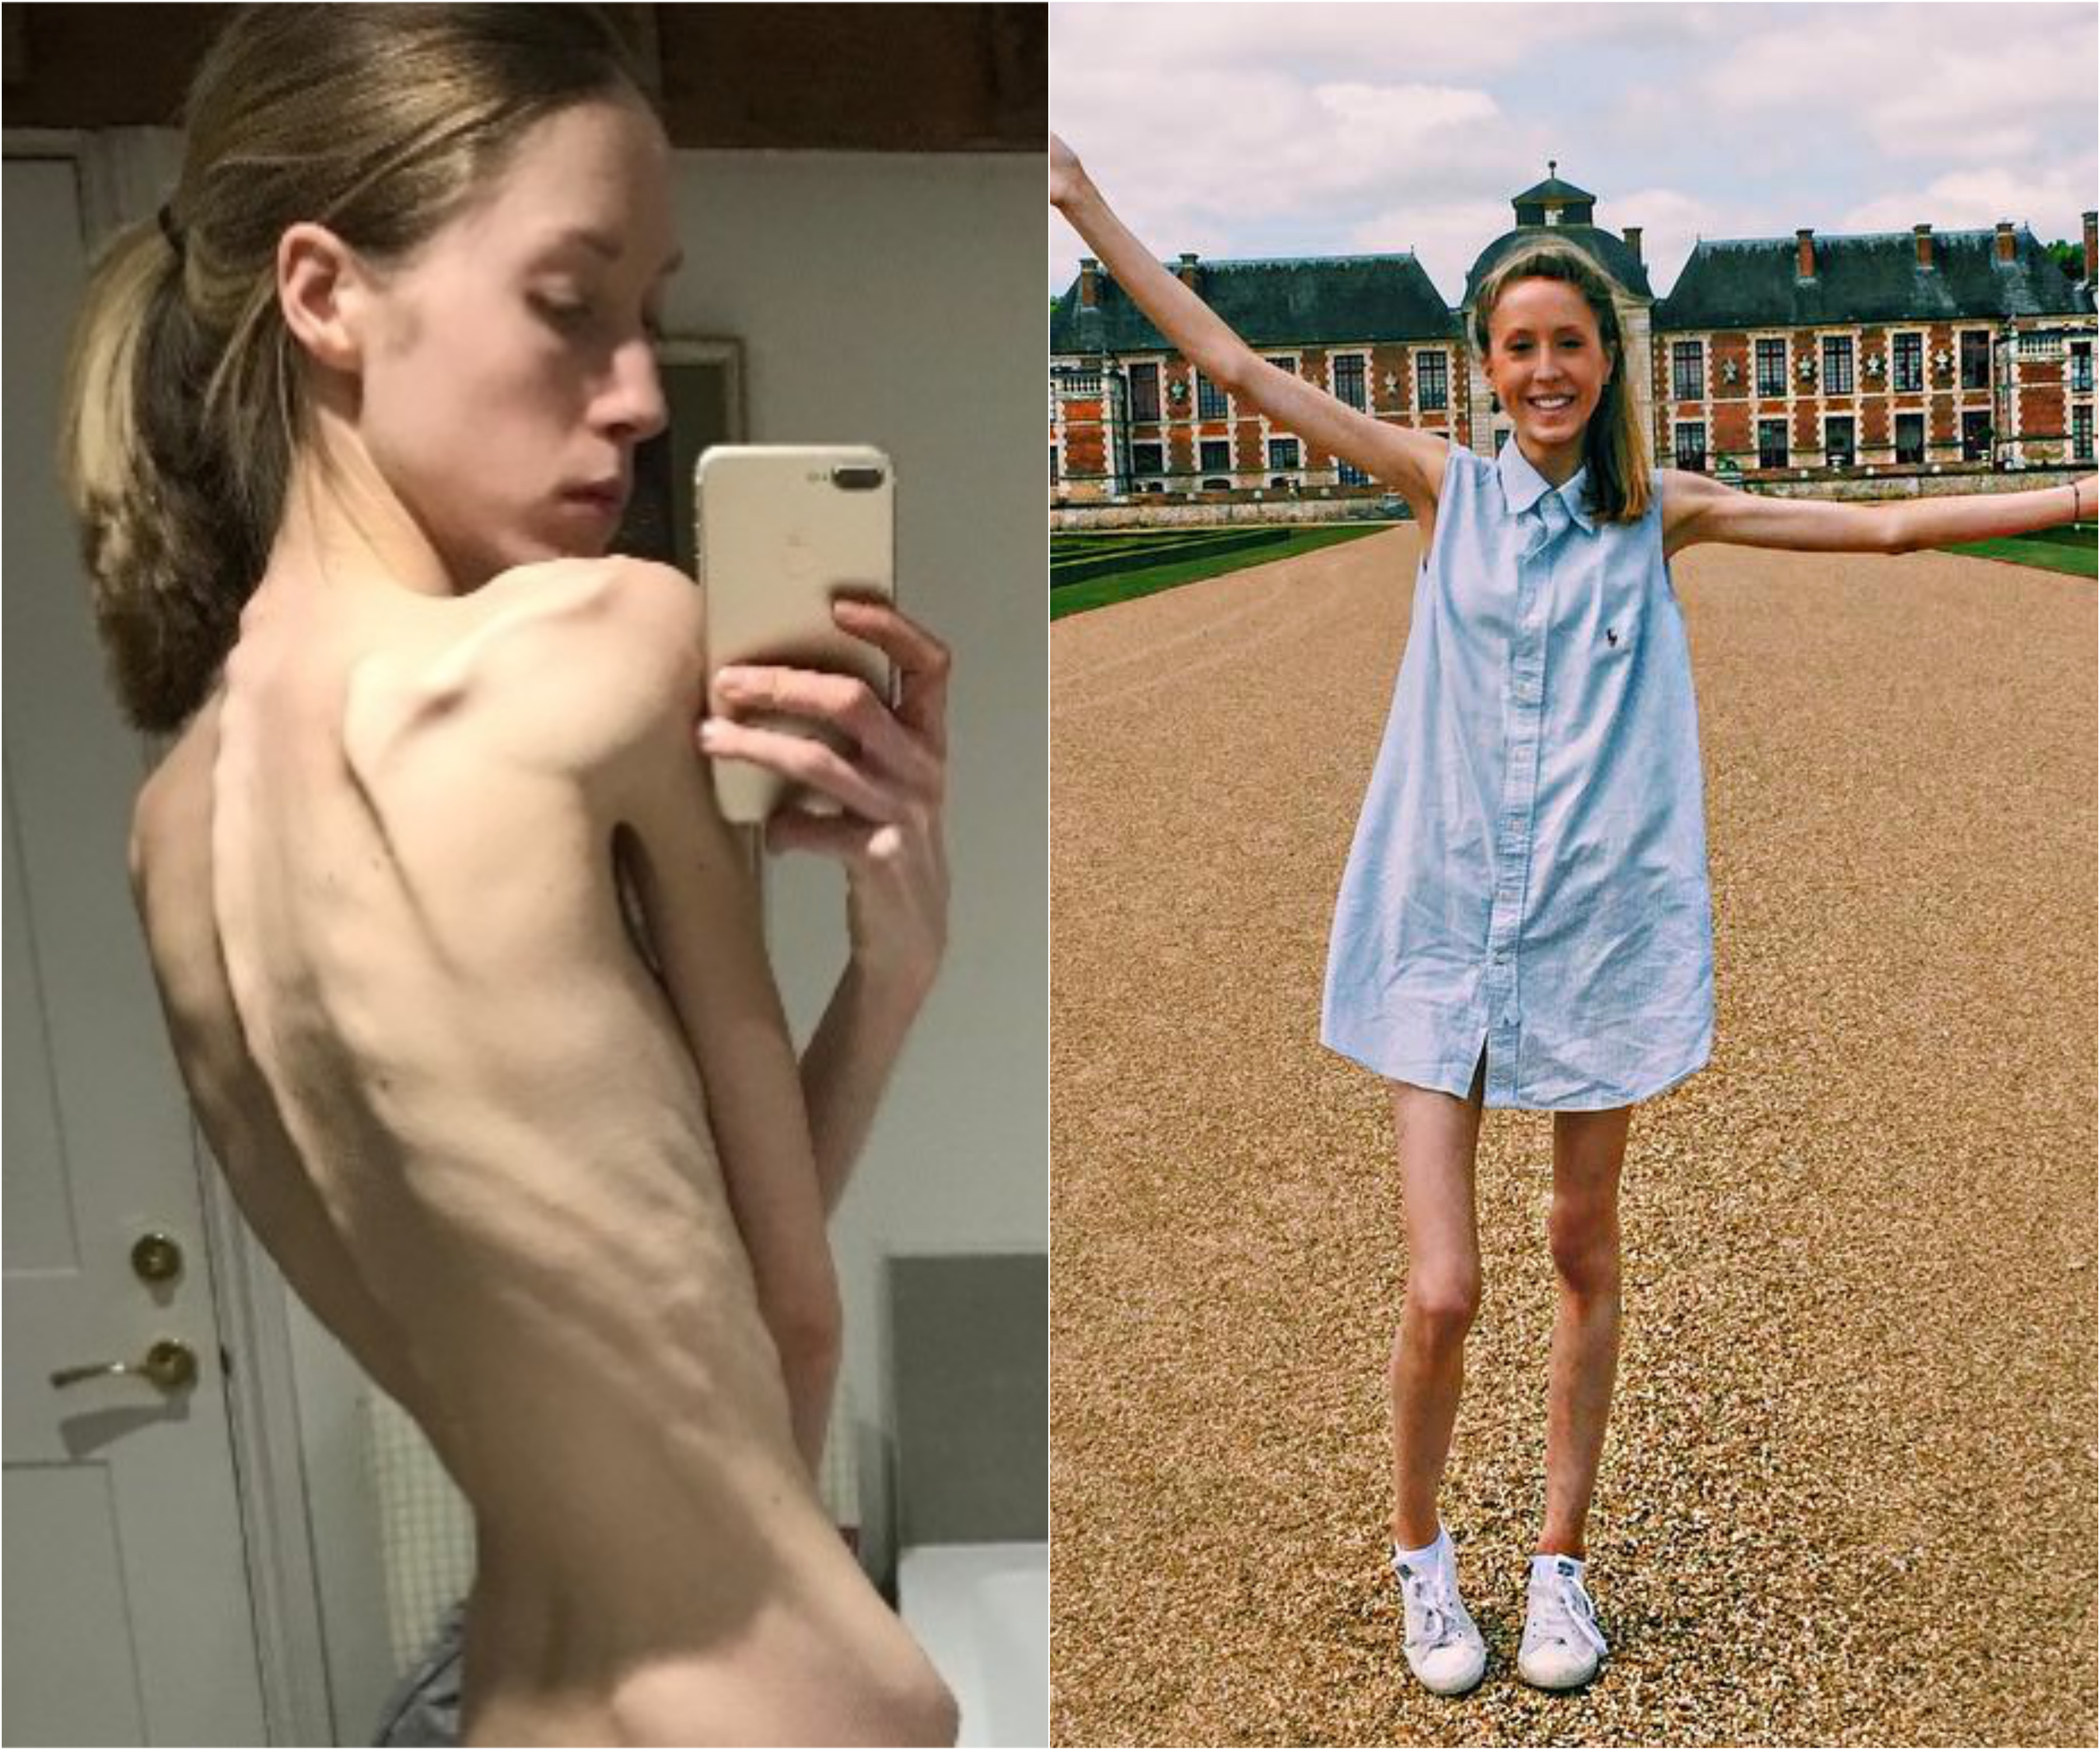 Фото до и после госпитализации. Фото © Instagram/jemimahepburn